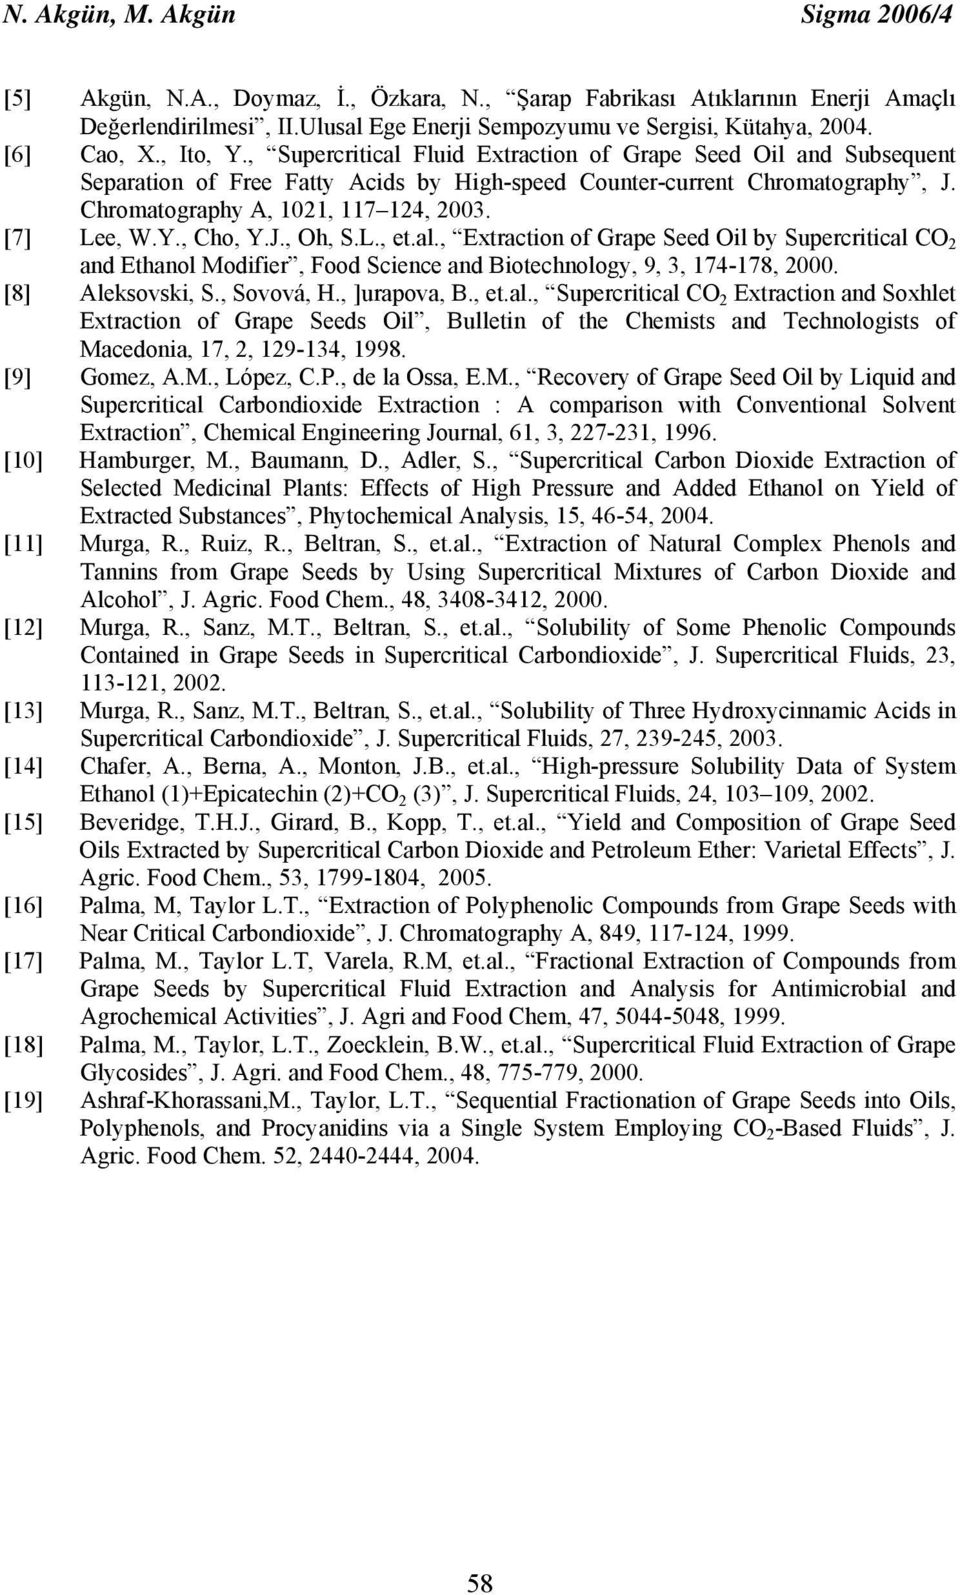 Chromatography A, 101, 117 14, 003. [7] Lee, W.Y., Cho, Y.J., Oh, S.L., et.al.